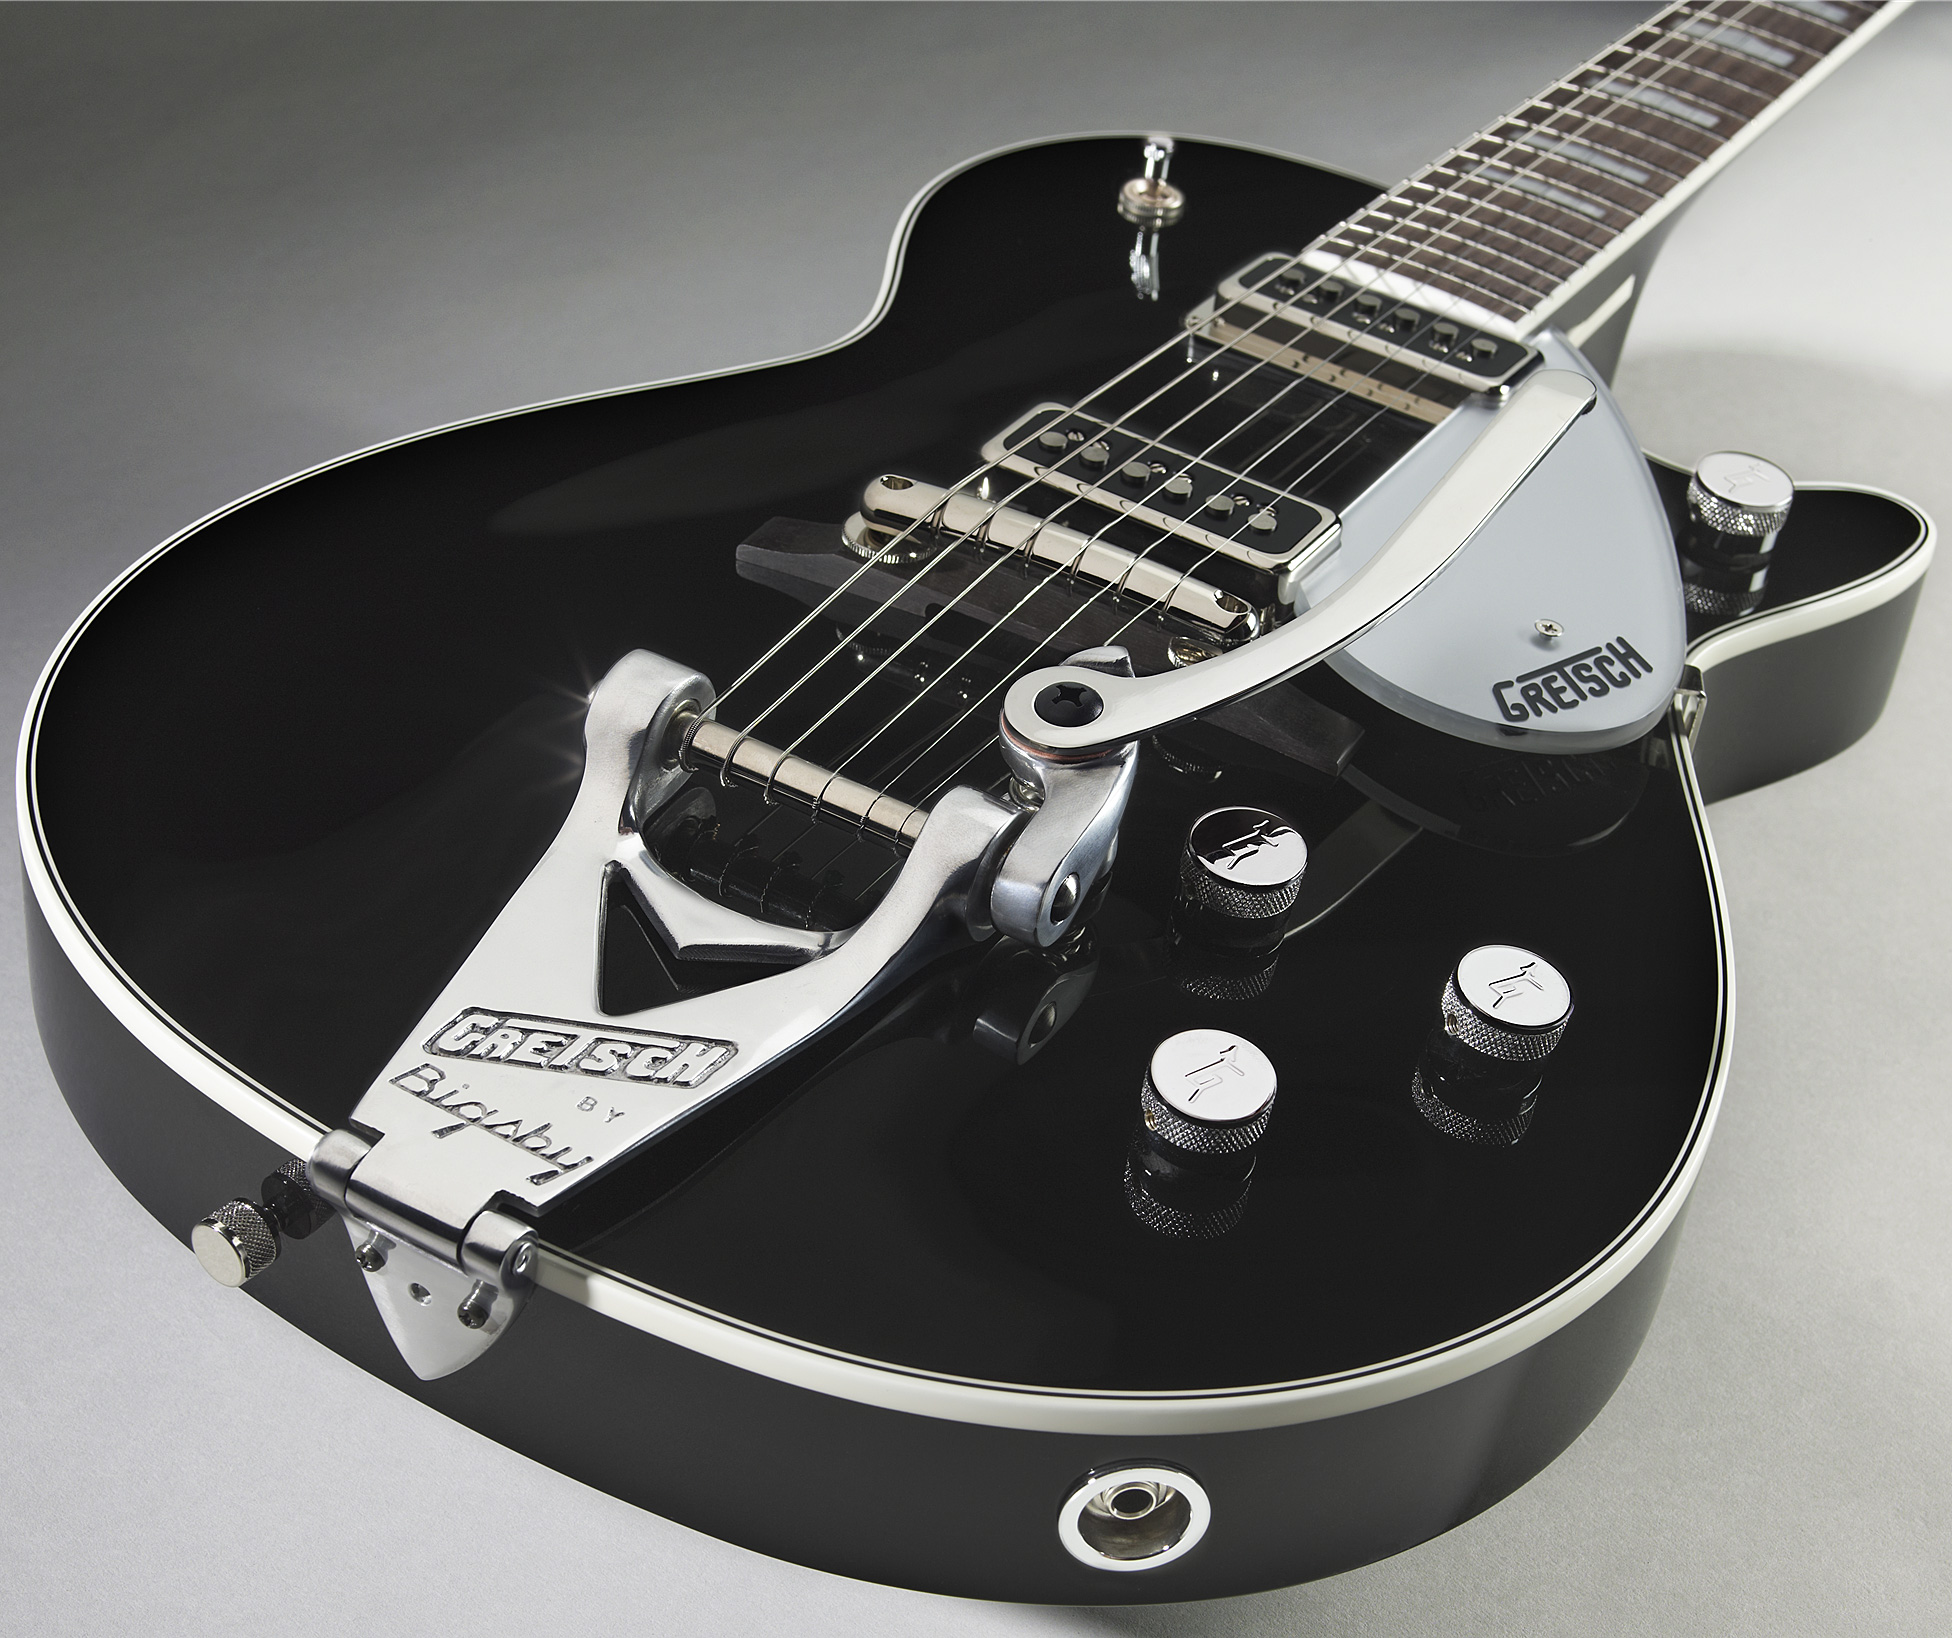 Gretsch George Harrison G6128t-gh Signature Duo Jet - Black - Enkel gesneden elektrische gitaar - Variation 2